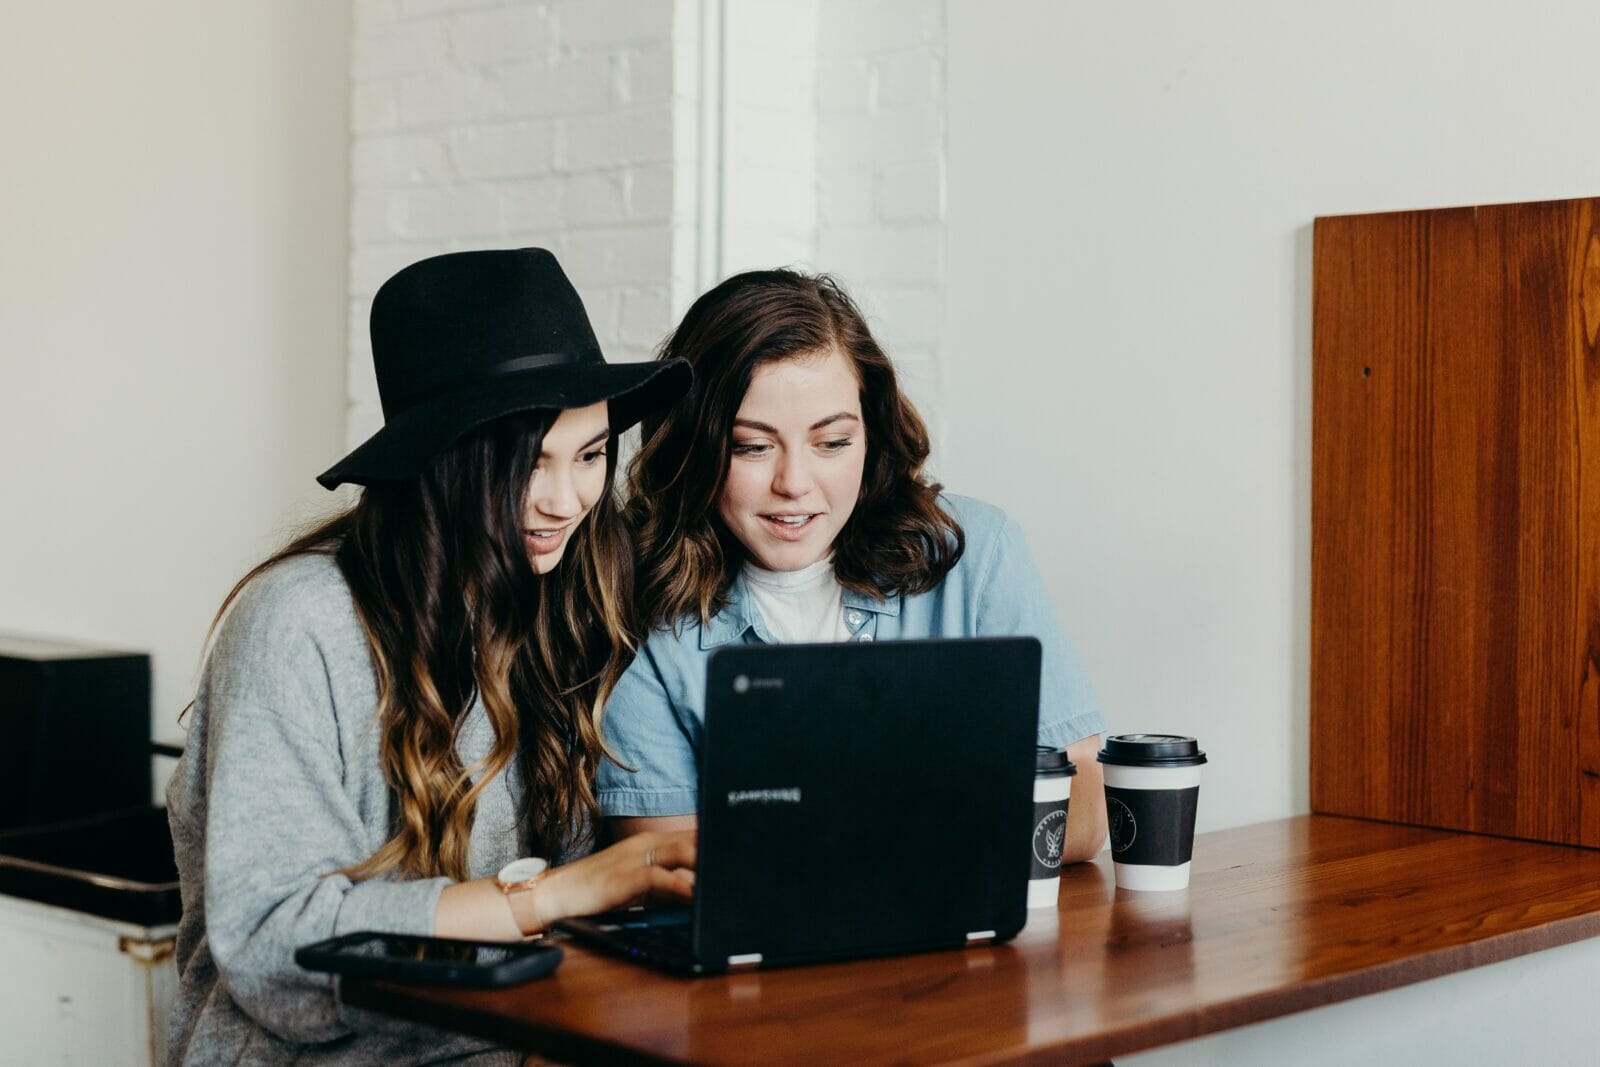 dos mujeres jóvenes ven algo en una computadora personal beben café